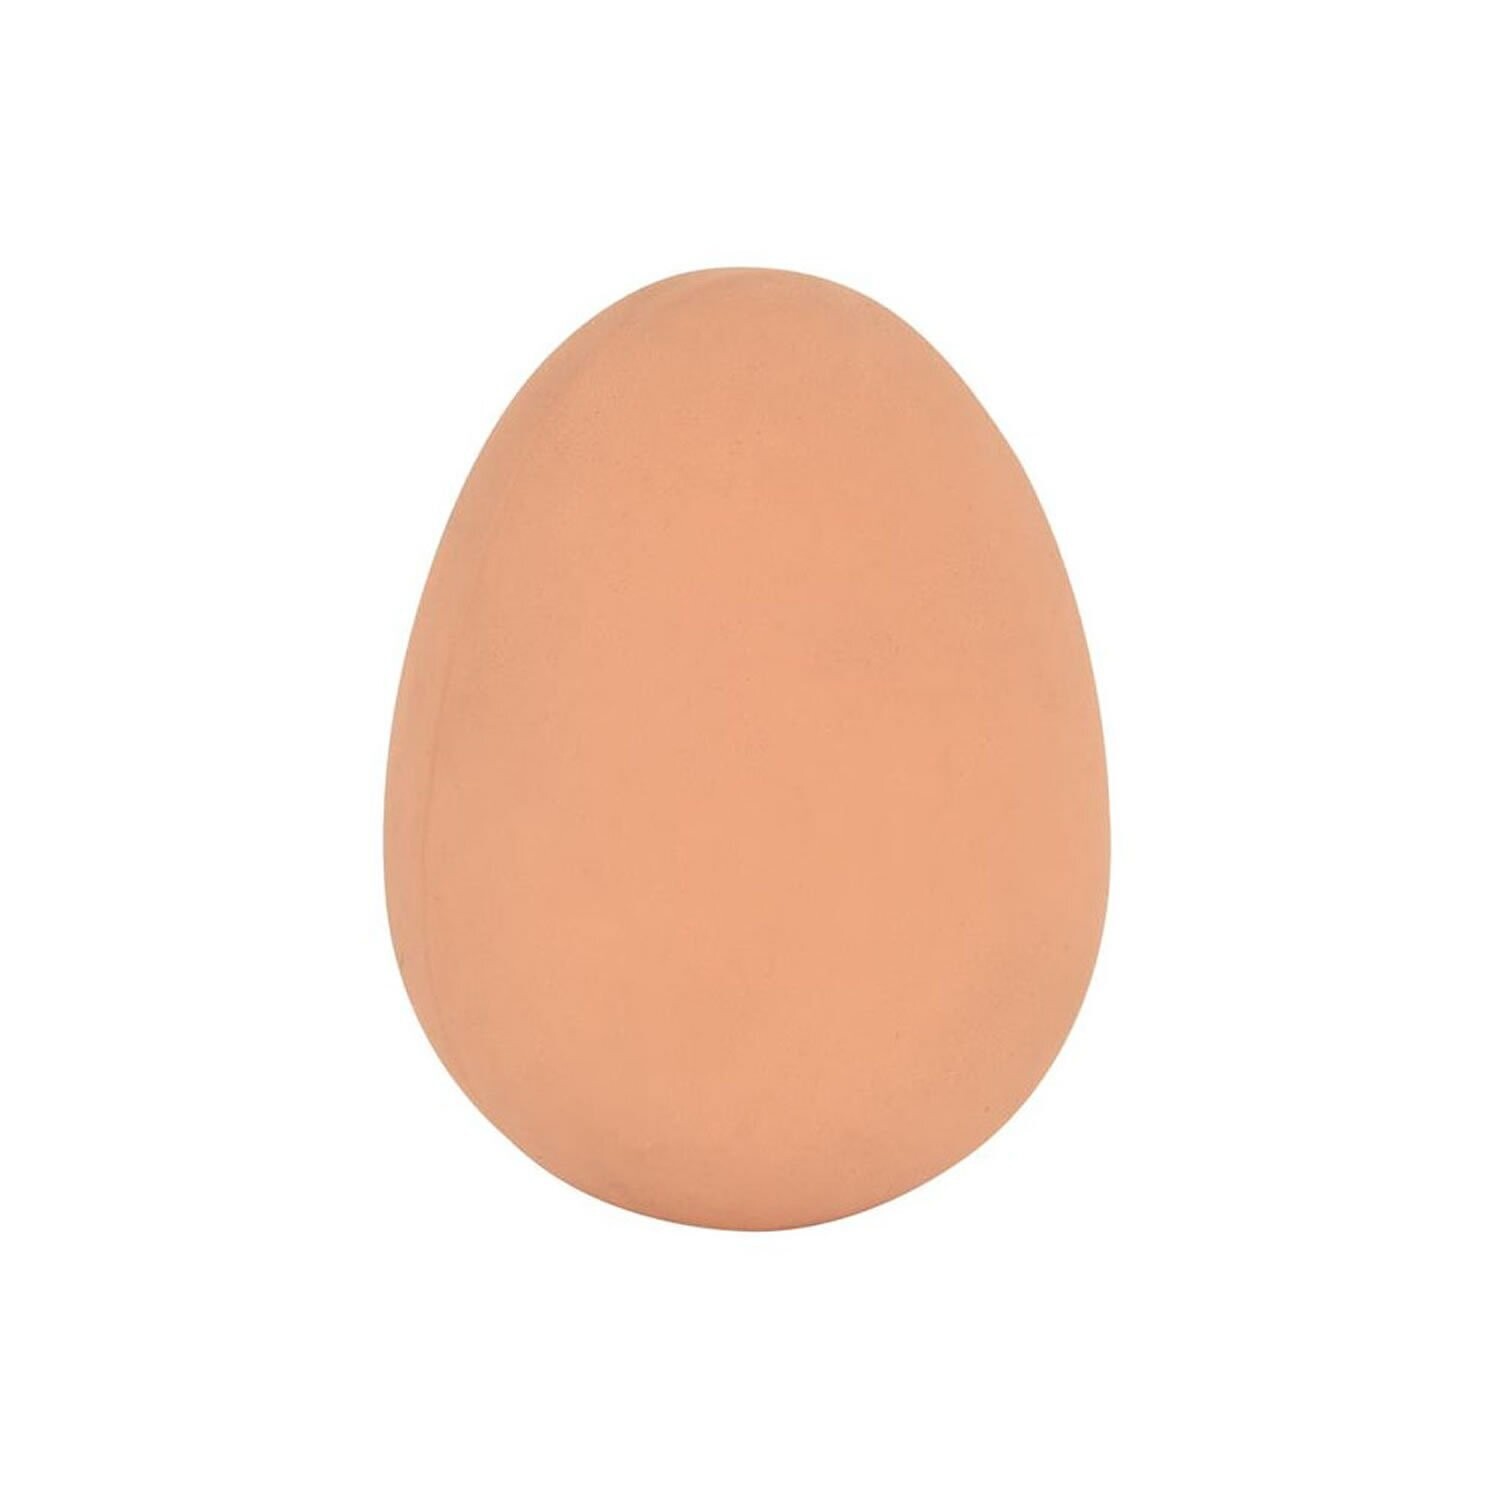 ETON Rubber Hen Egg - Single